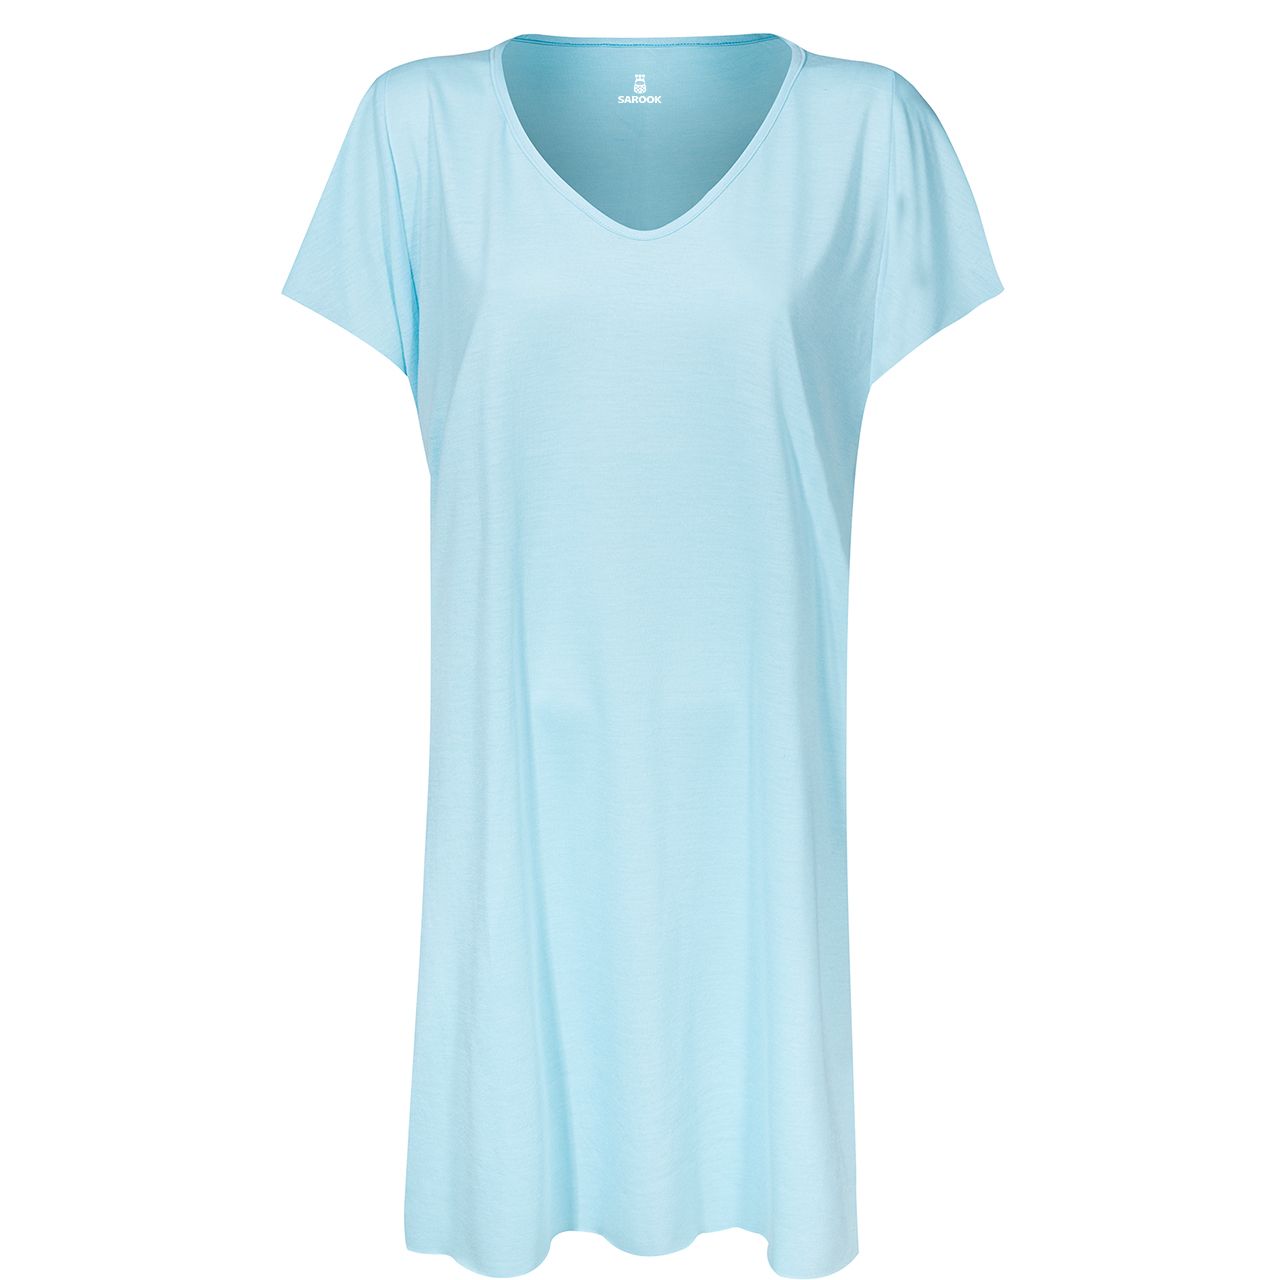 پیراهن زنانه ساروک مدل PRZMELANZH کد 05 رنگ آبی روشن -  - 1